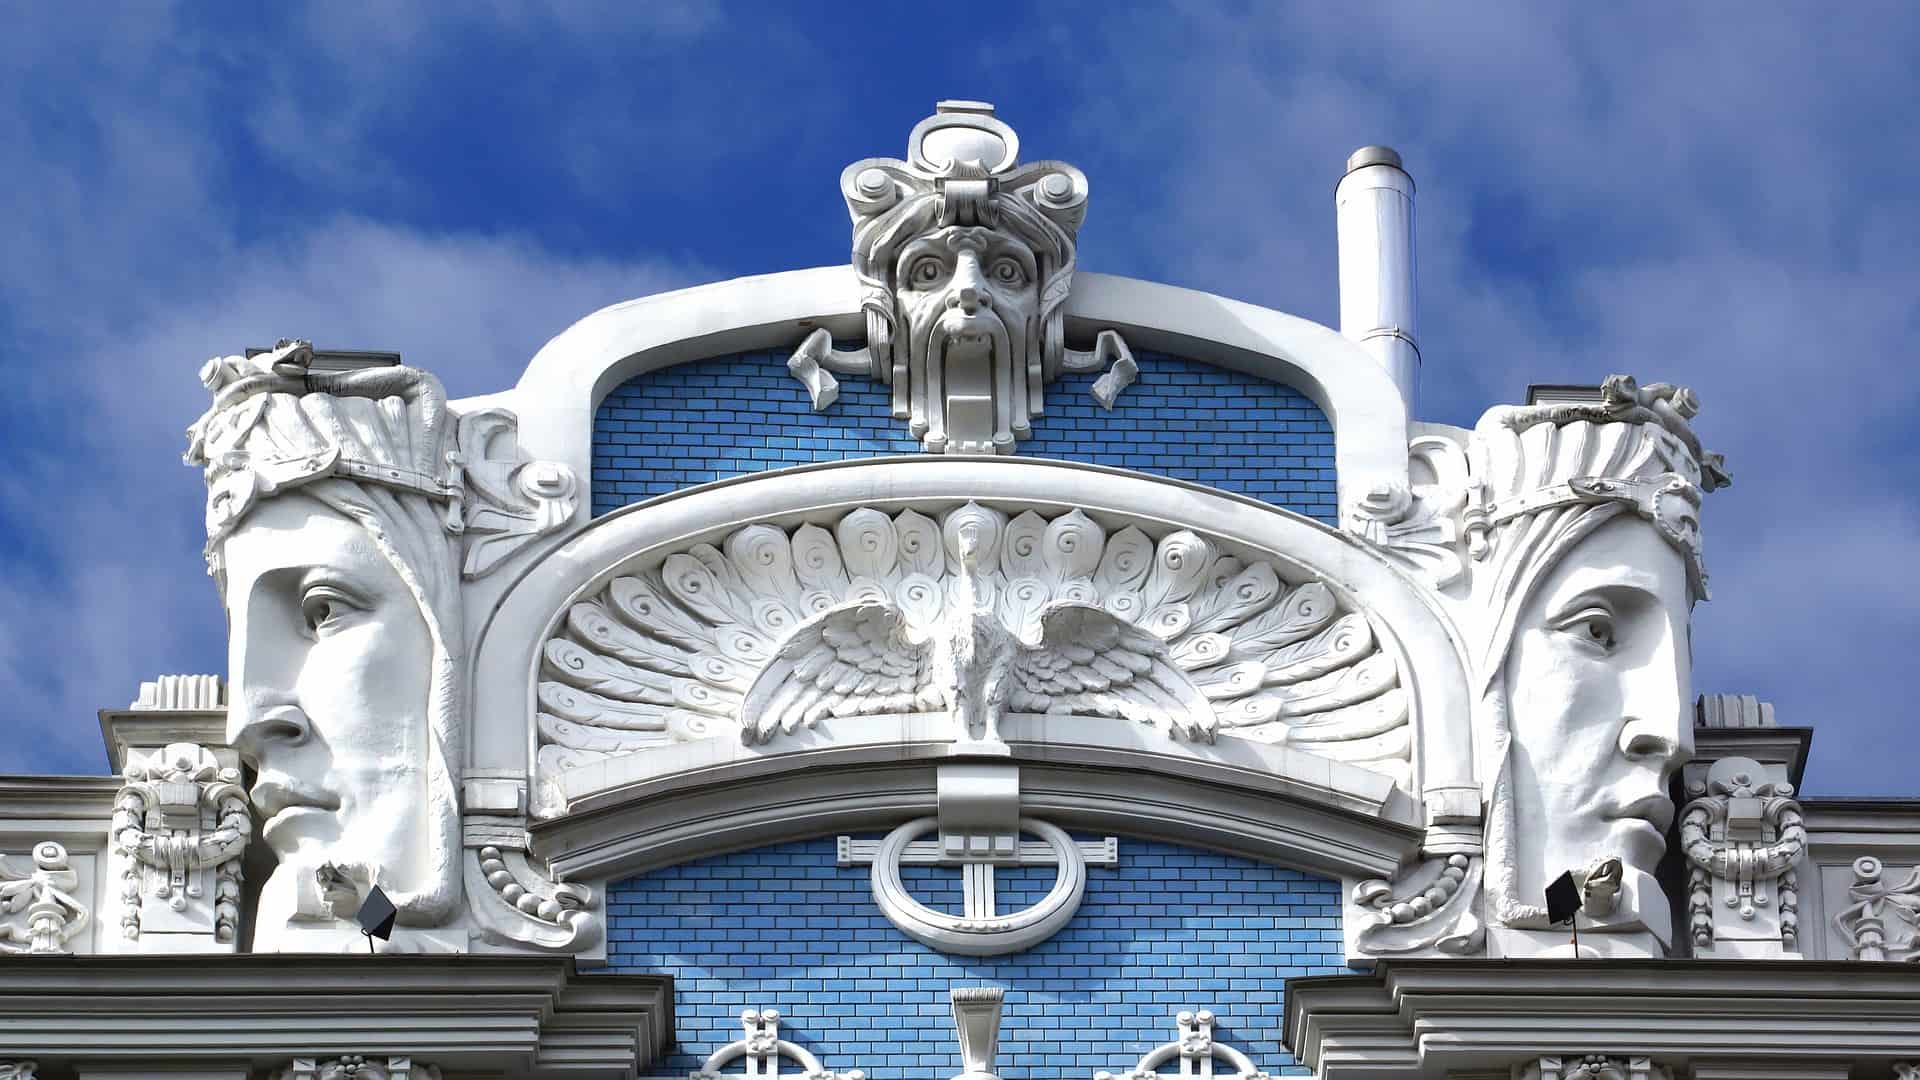 Riga Art Deco Architecture in Latvia UNESCO World Heritage Site